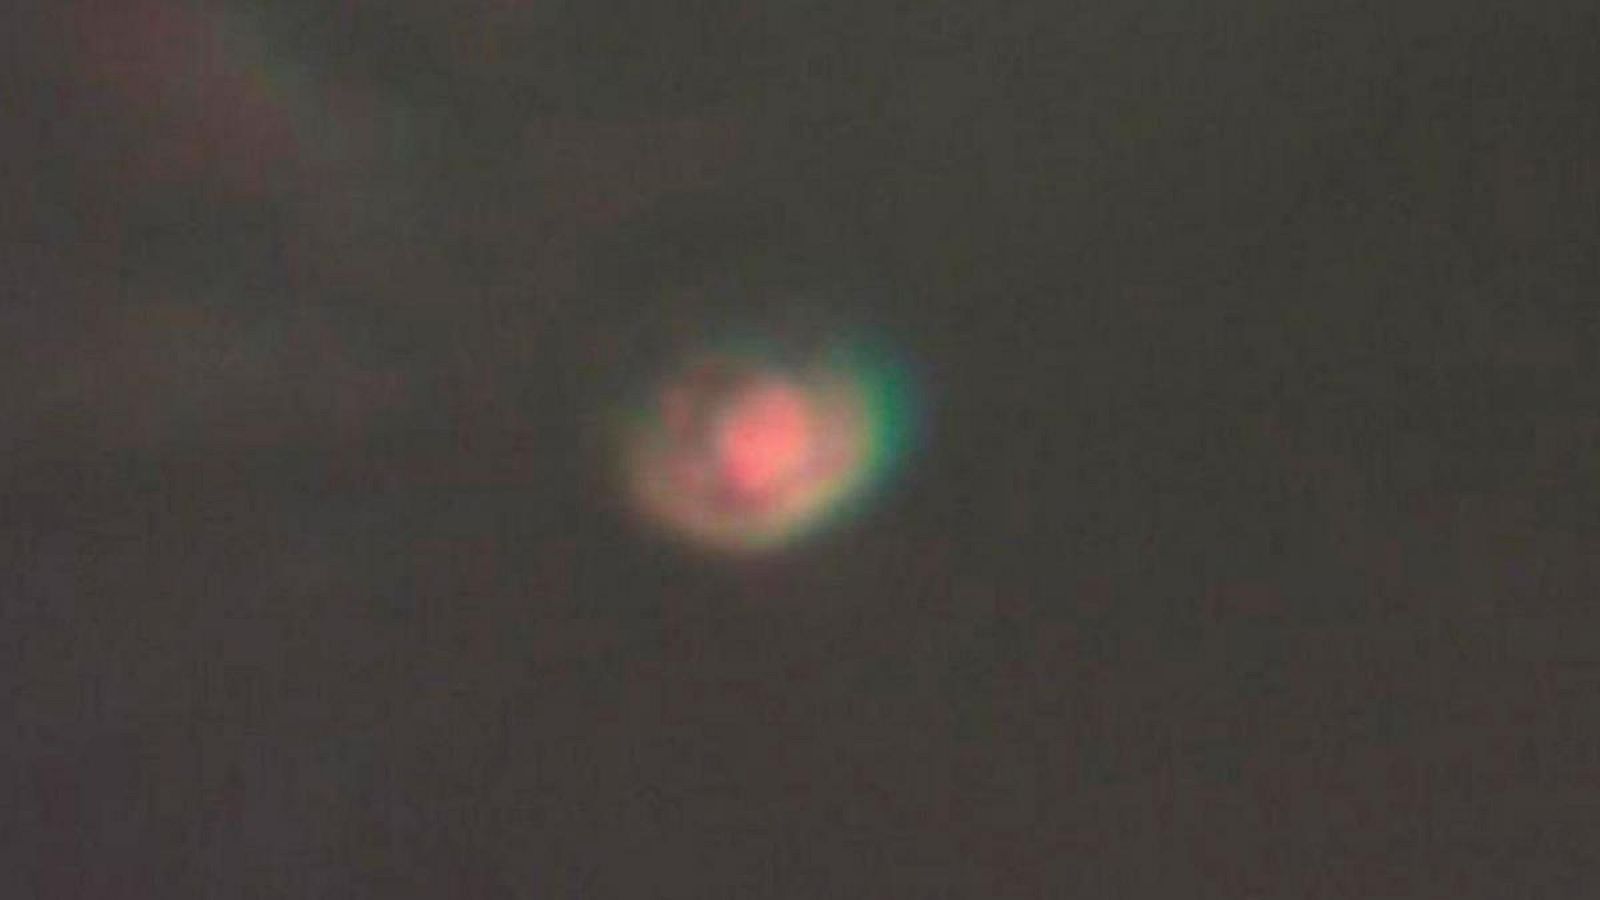 Imagen del hidrógeno metálico, que mide entre 8 y 10 micras, obtenida captando la luz que refleja